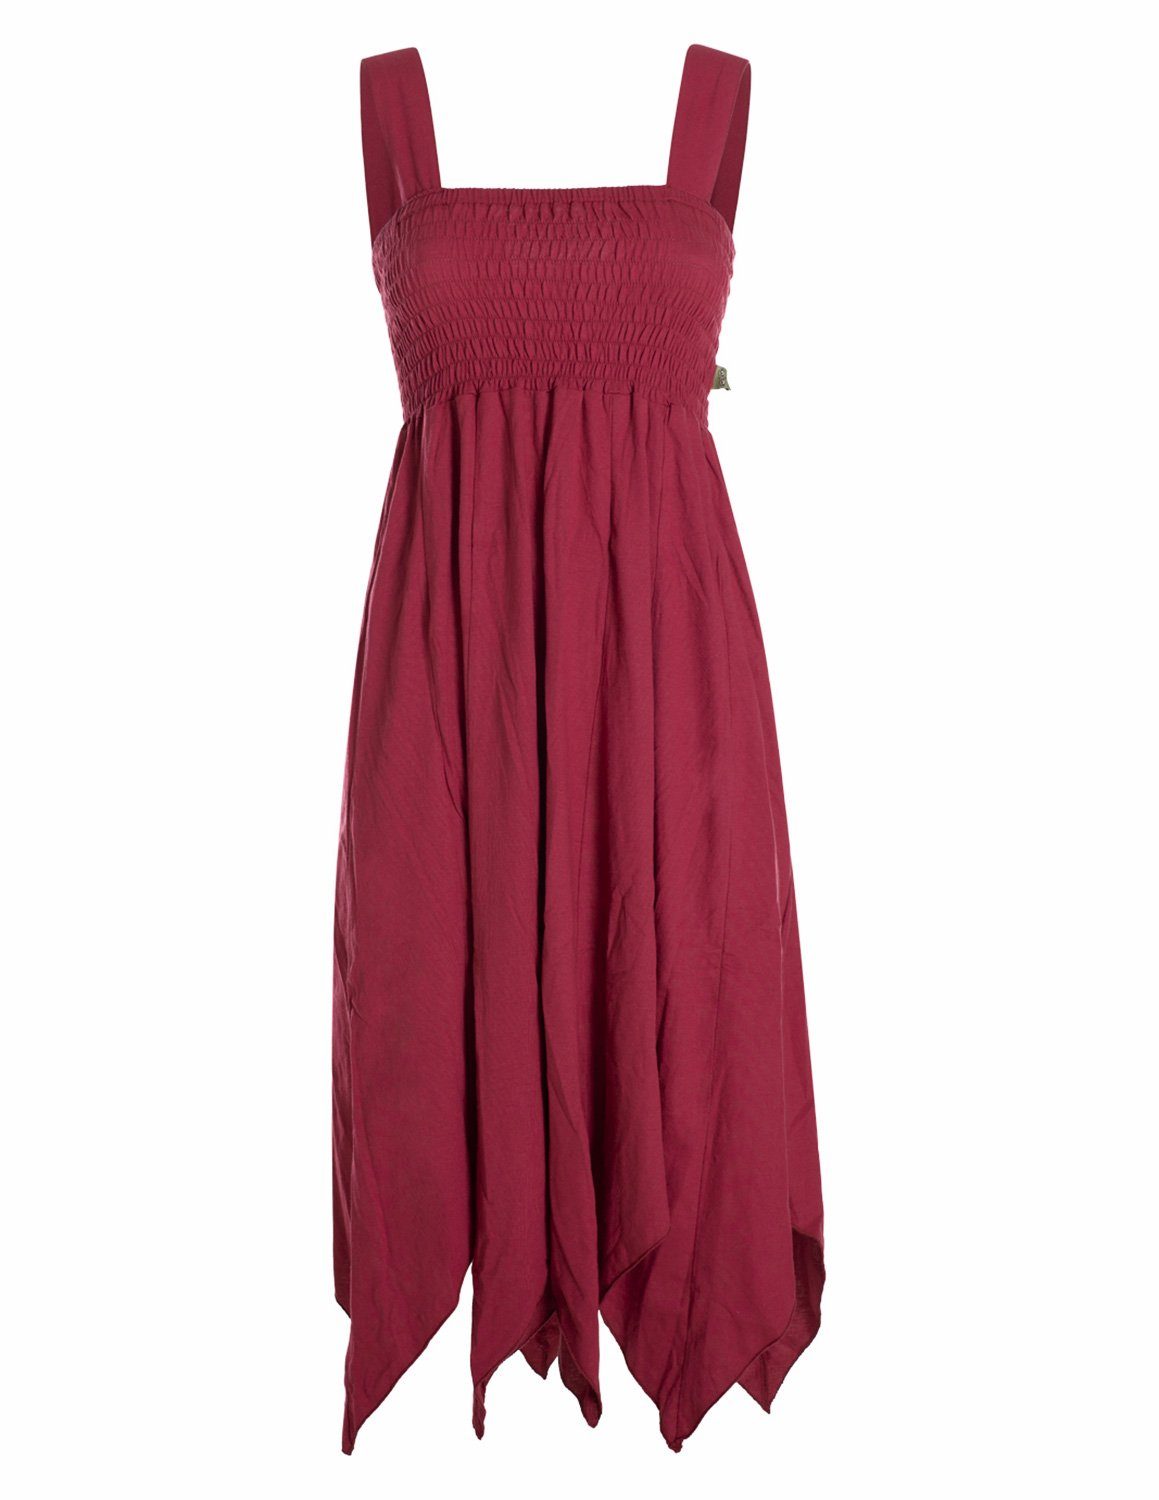 Vishes Zipfelkleid Langes Sommerkleid aus Bio Baumwolle mit Zipfeln und breiten Trägern Goa, Hippie, Style, Strandkleid dunkelrot